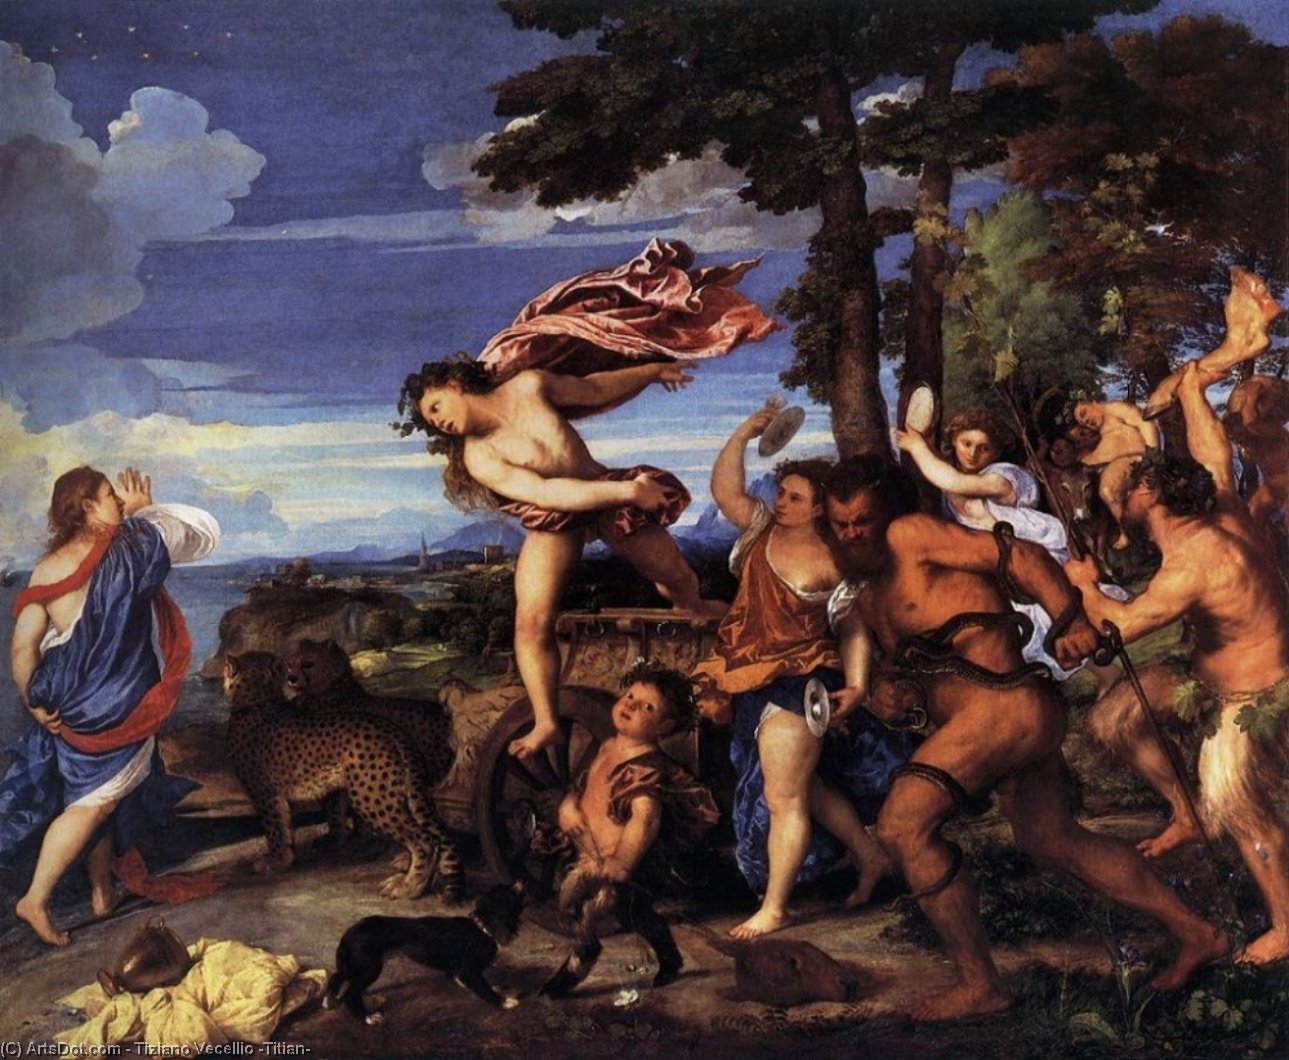 WikiOO.org - Encyclopedia of Fine Arts - Maleri, Artwork Tiziano Vecellio (Titian) - Bacchus and Ariadne